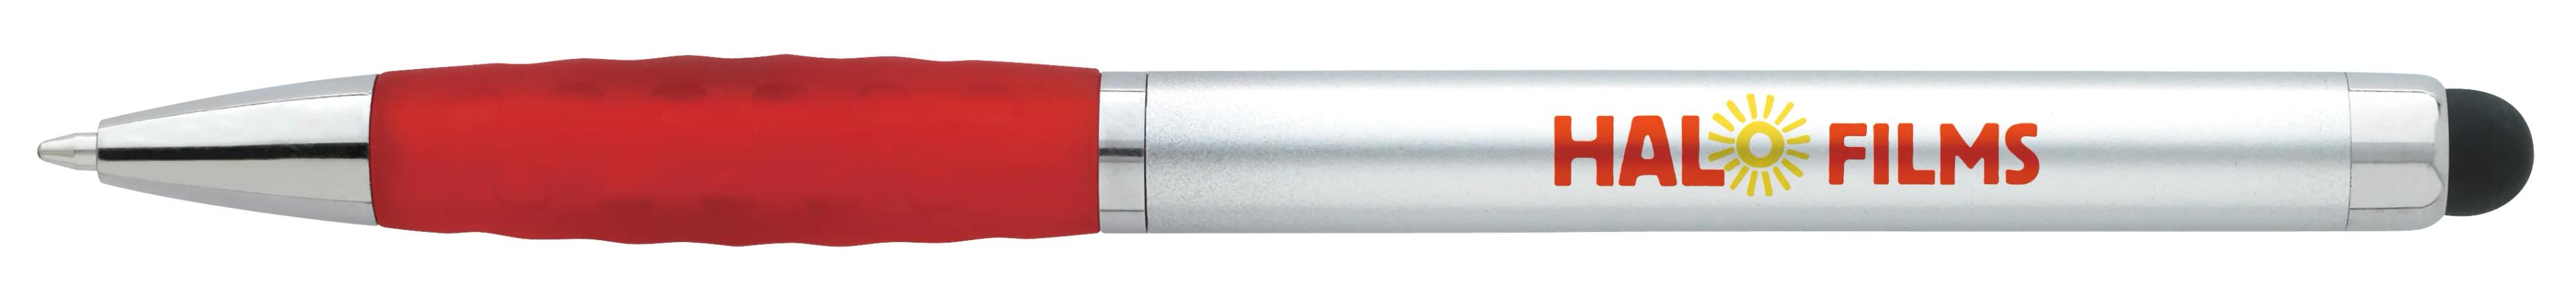 Silver Stylus Grip Pen 4 of 11